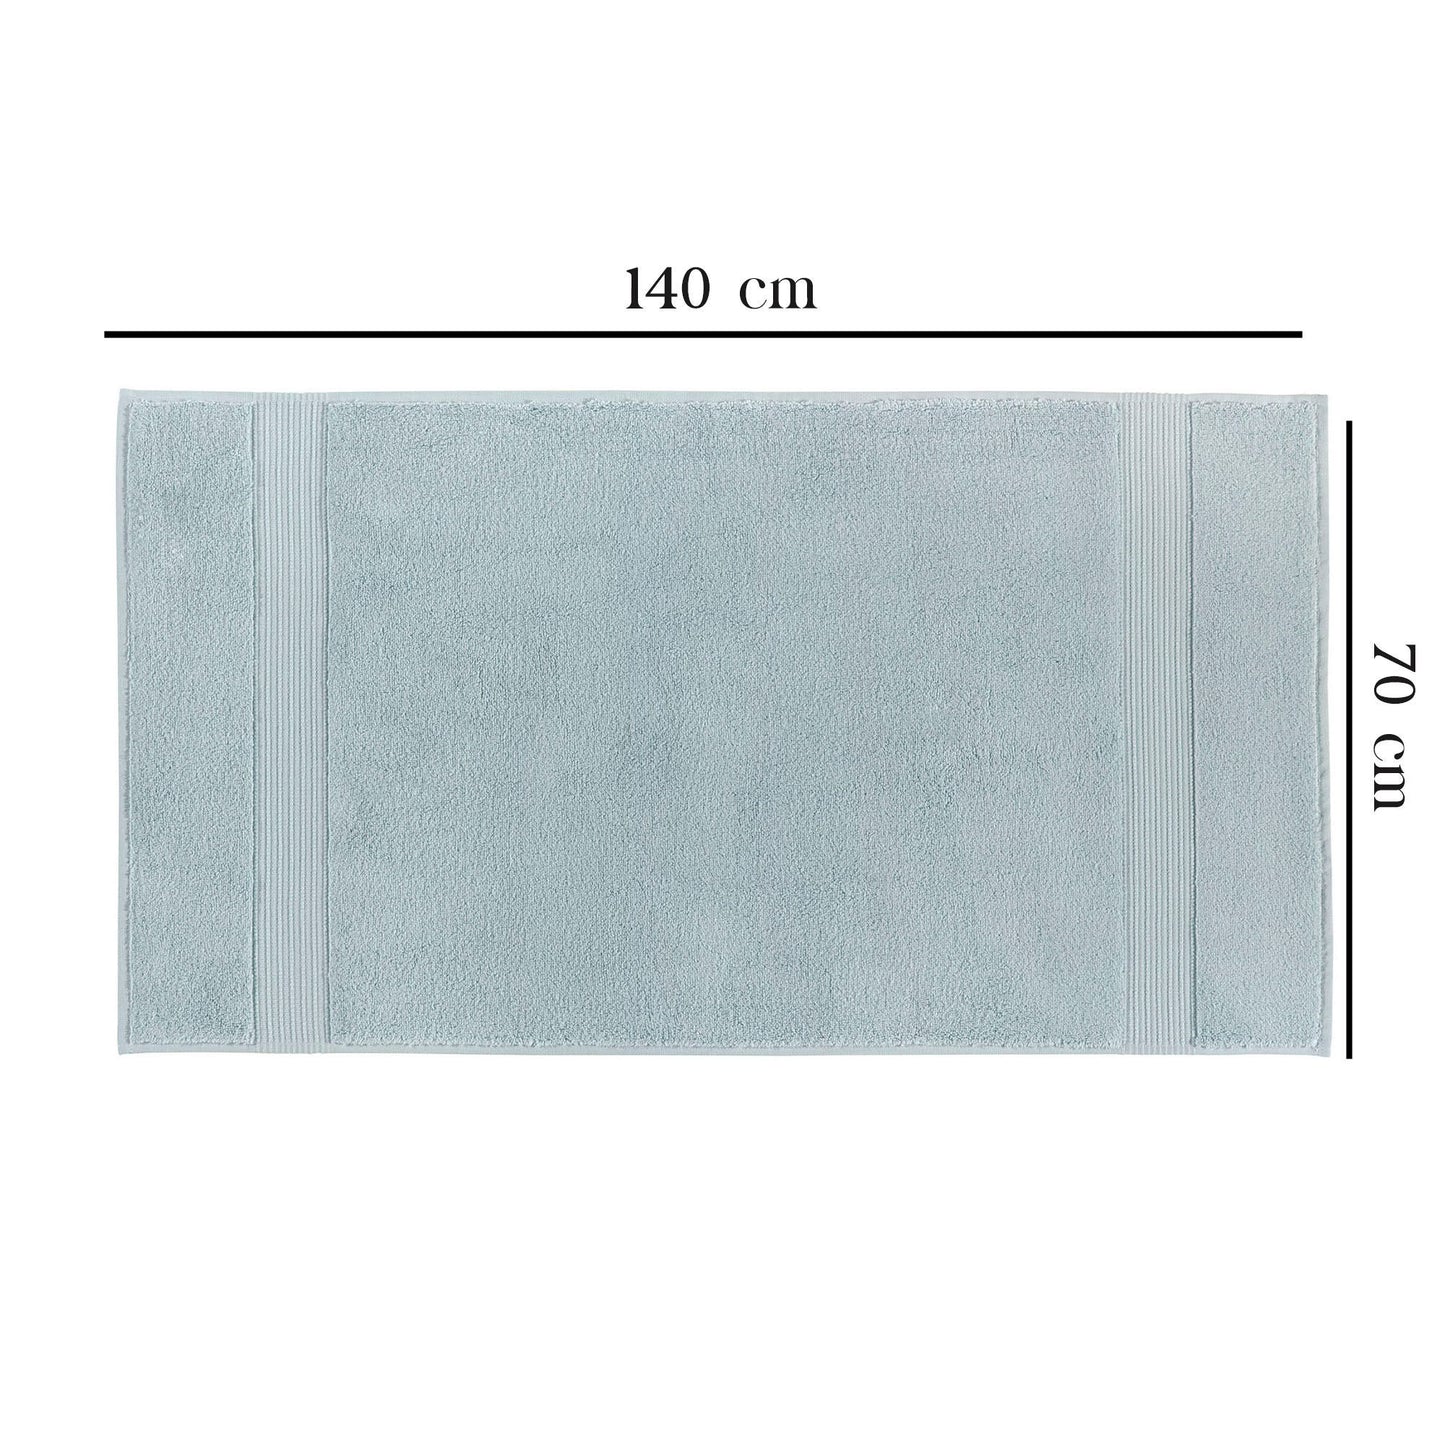 Håndklædesæt - Chicago Bath (70 x 140) - Lyseblå